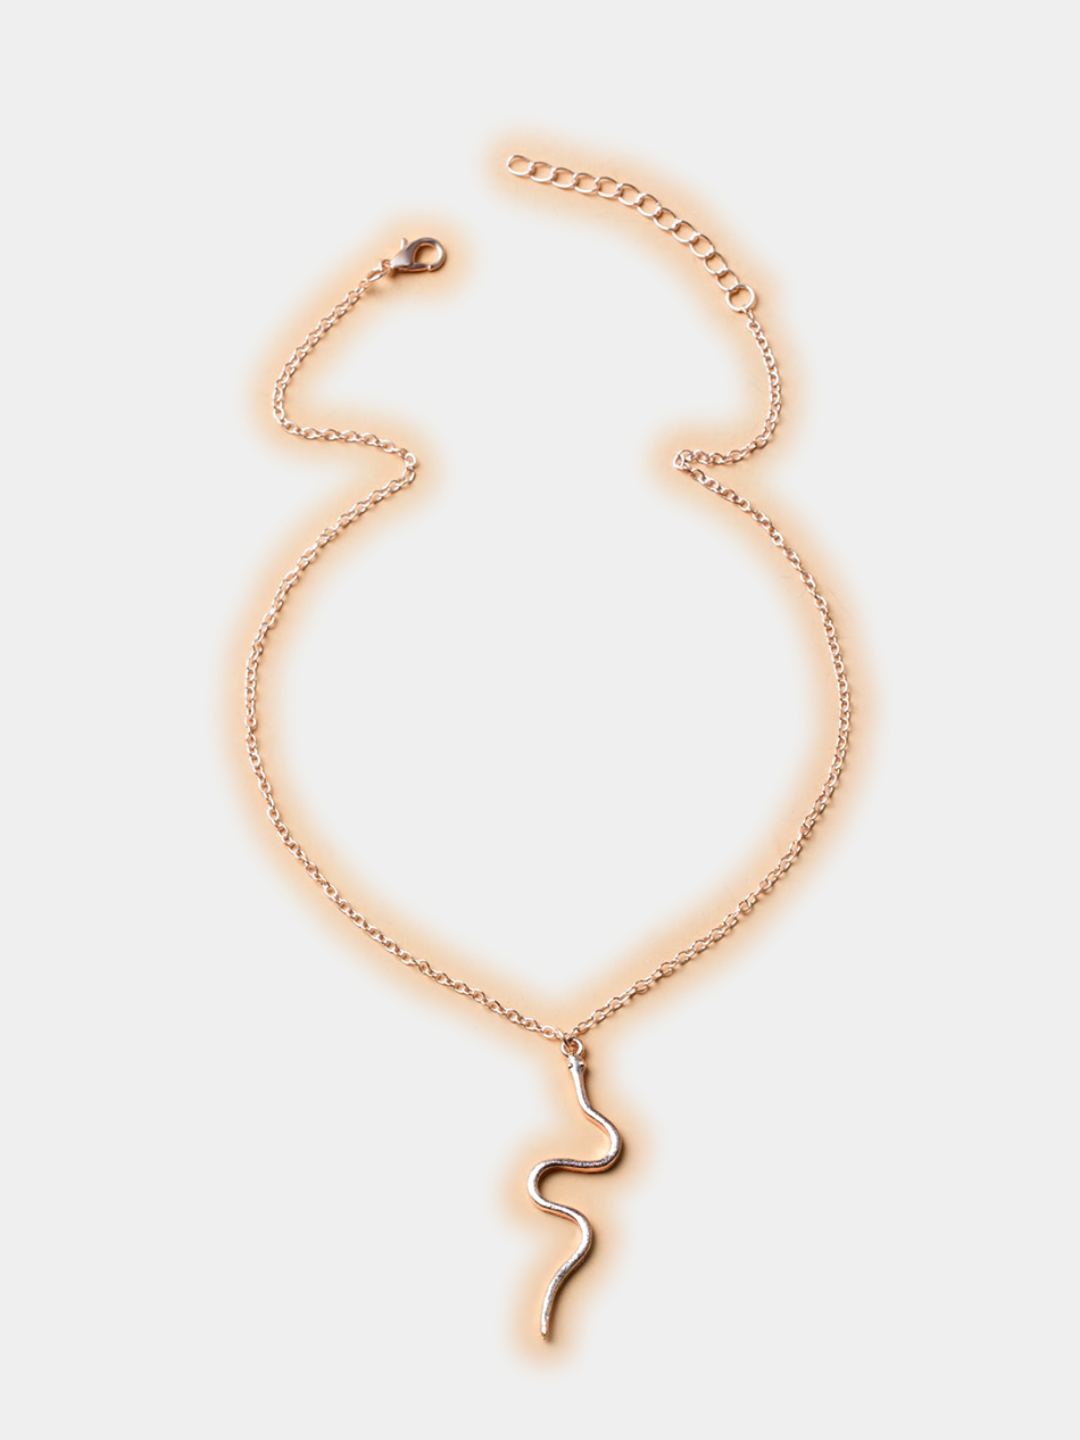 Цепочка с подвеской Змея под розовое золото купить по цене 185 ₽ винтернет-магазине KazanExpress